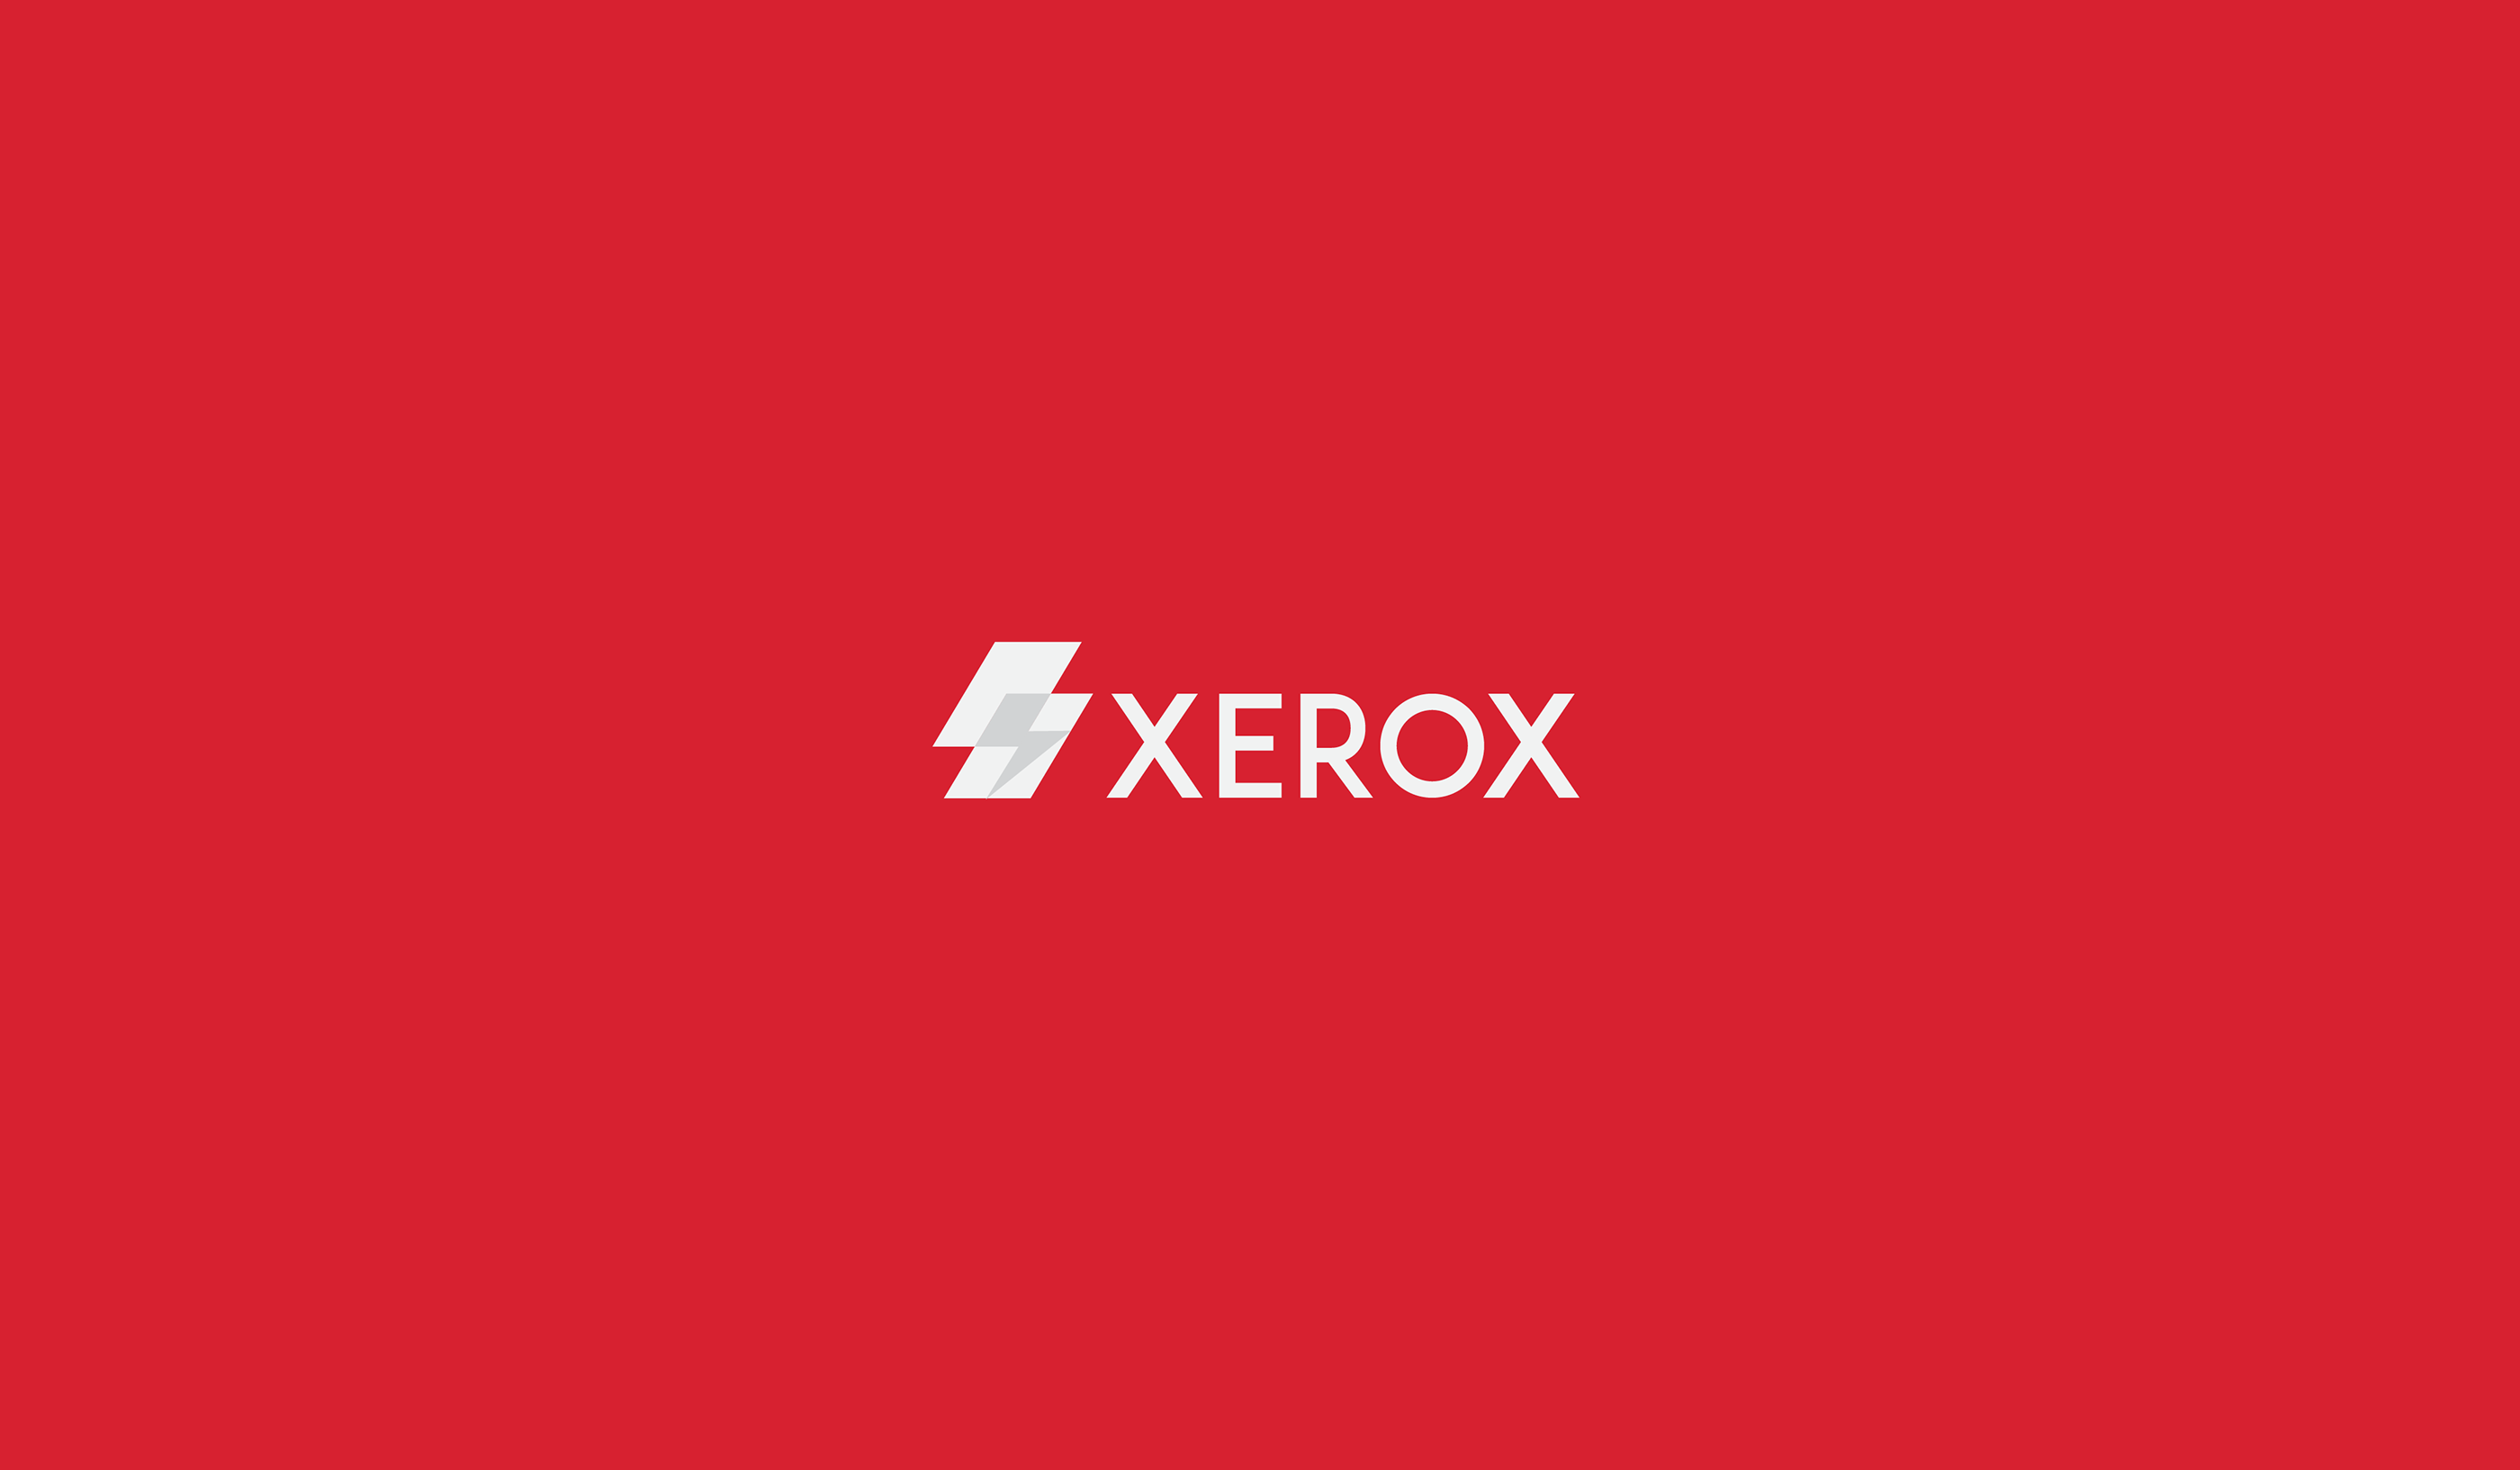 Xerox Rebranding On Behance